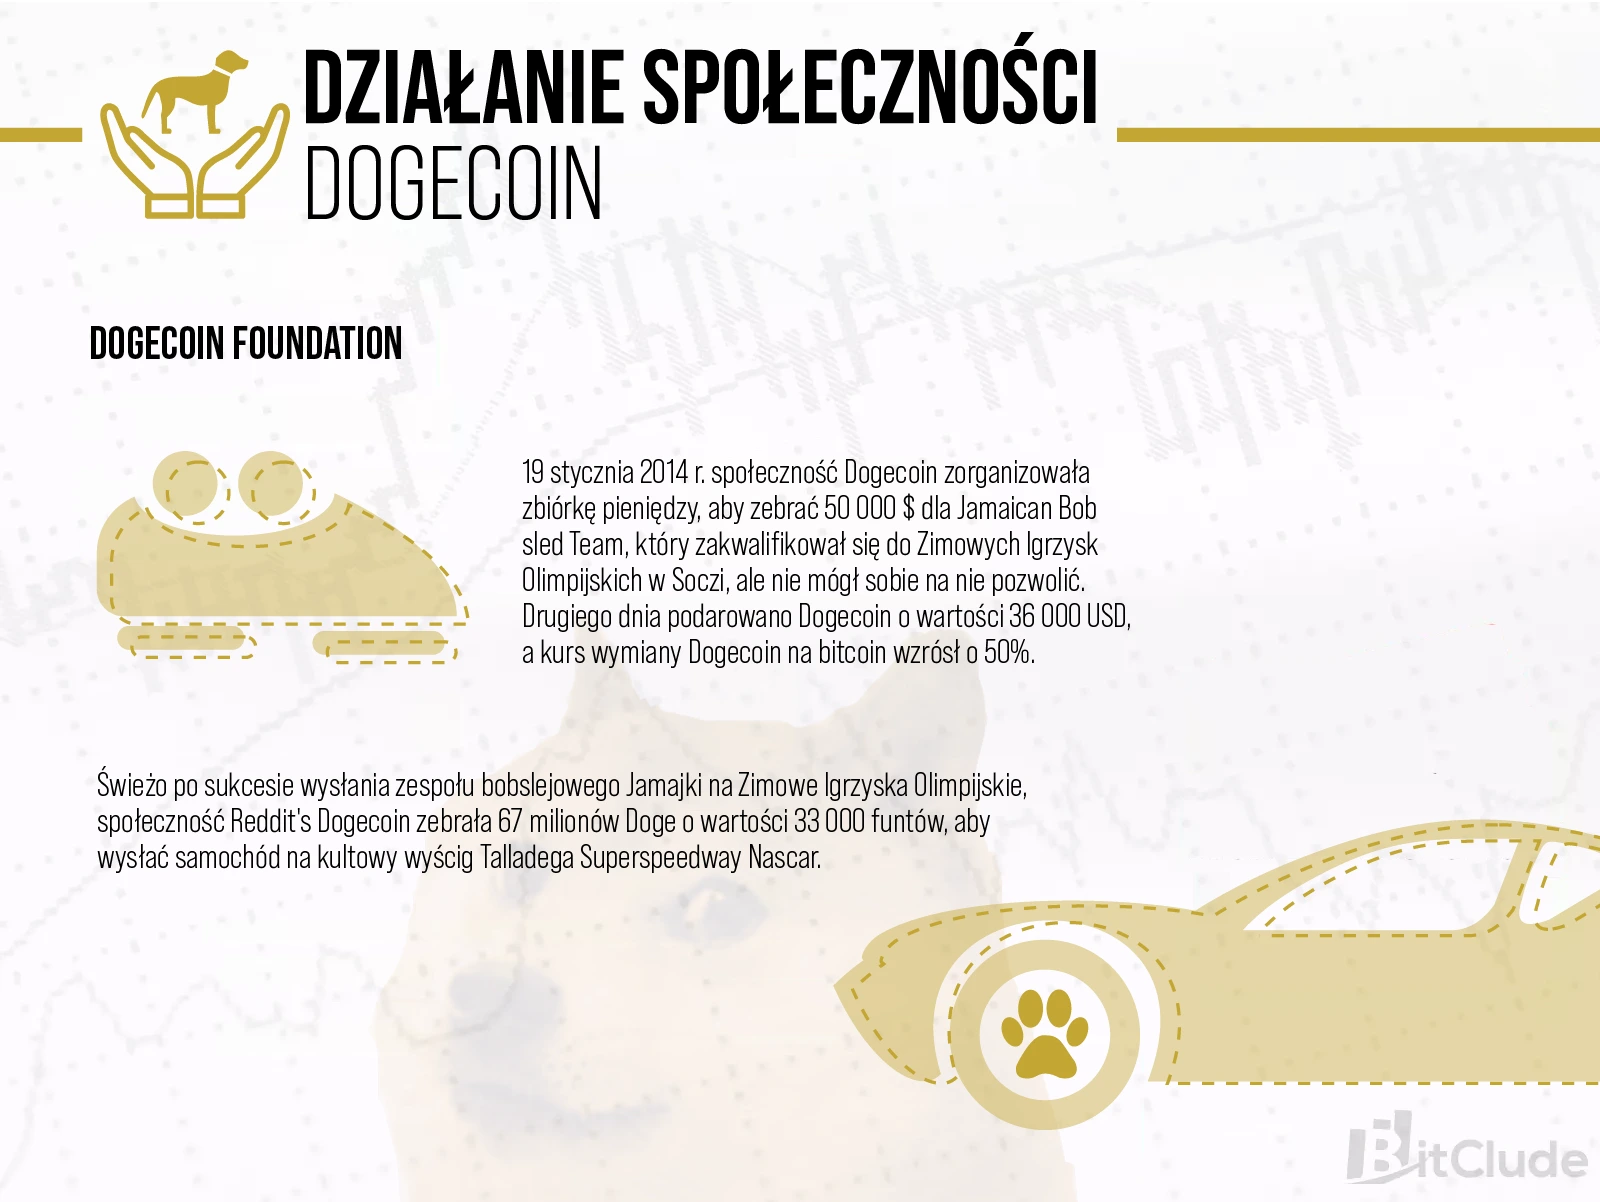 Społeczność Dogecoina jest bardzo rozbudowana, przy użyciu tej kryptowaluty dokonano wiele zbiórek i akcji charytatywnych.